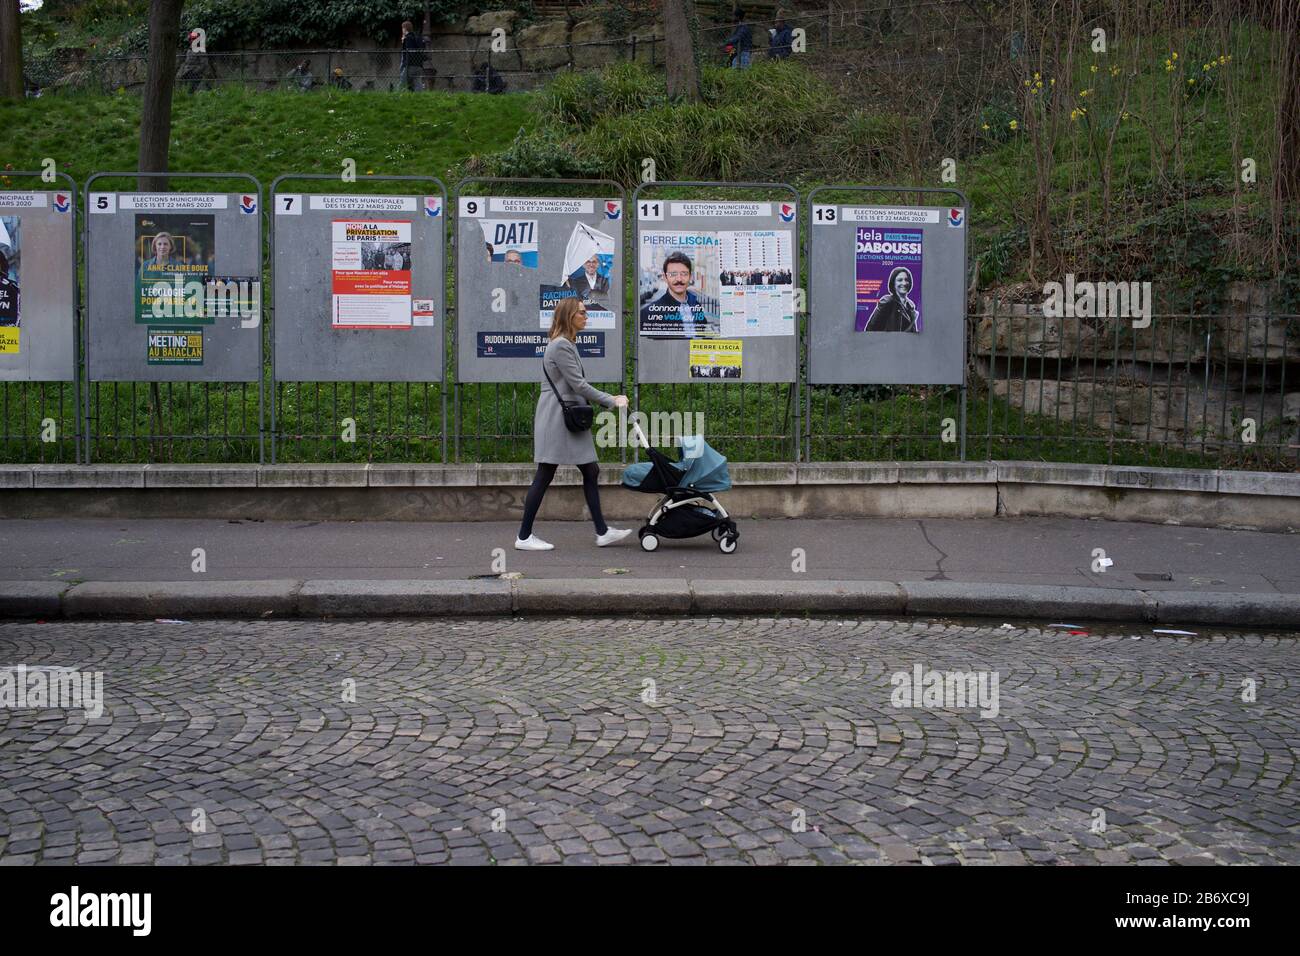 Donna con carrozzina passa accanto a pannelli che mostrano candidati elettorali in esecuzione nelle elezioni comunali francesi, rue Ronsard, Montmartre, 75018 Parigi, Francia, marzo 2020 Foto Stock